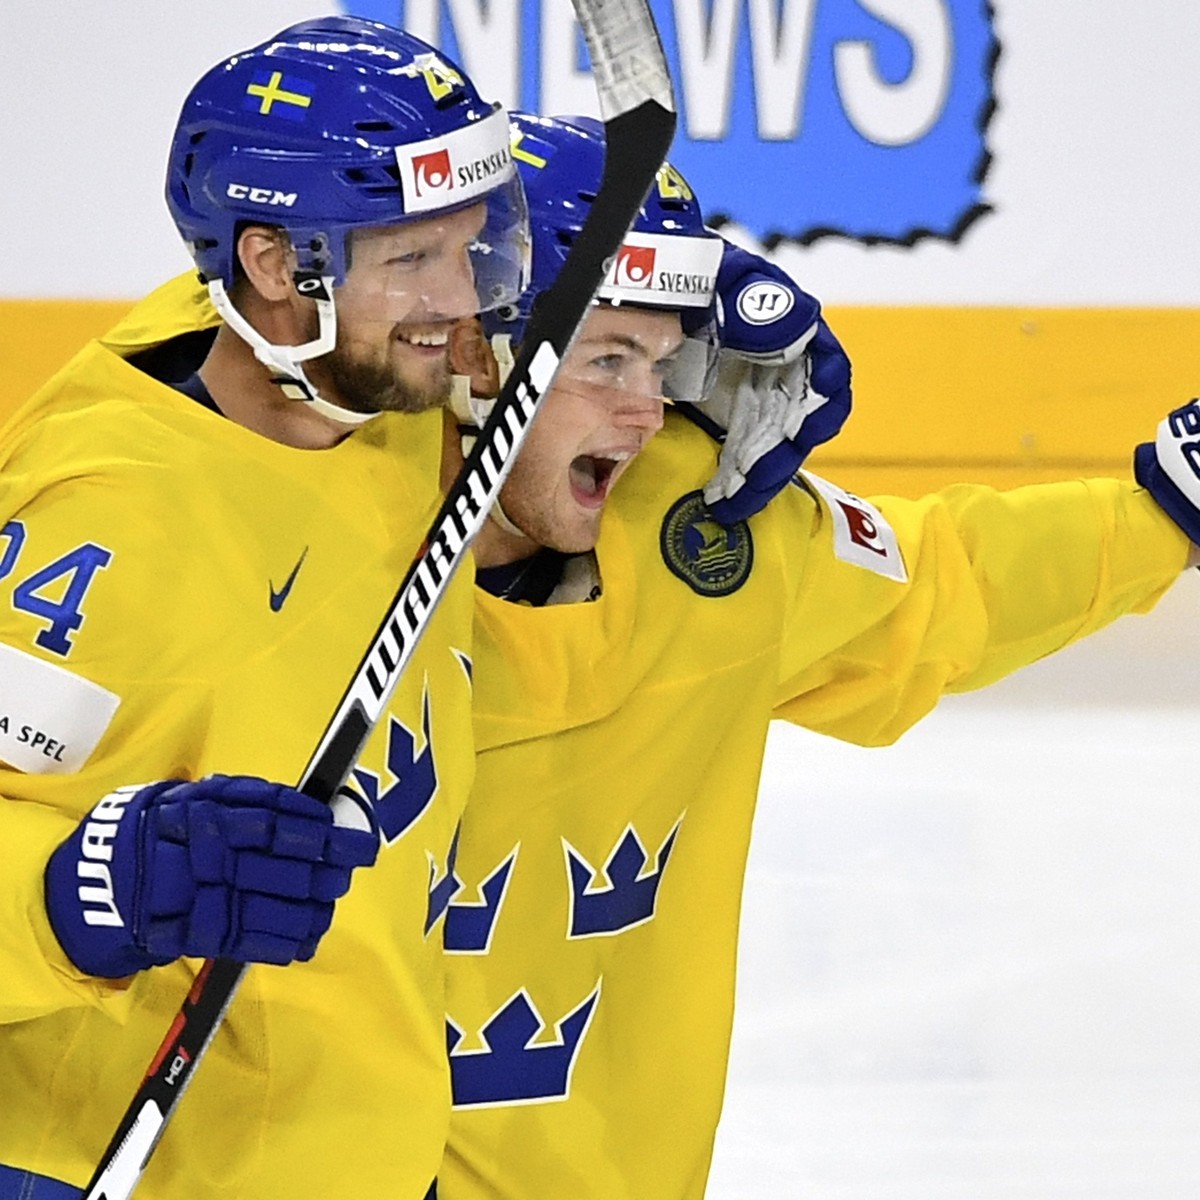 Eishockey-WM Liveticker zum Halbfinal zwischen Finnland und Schweden